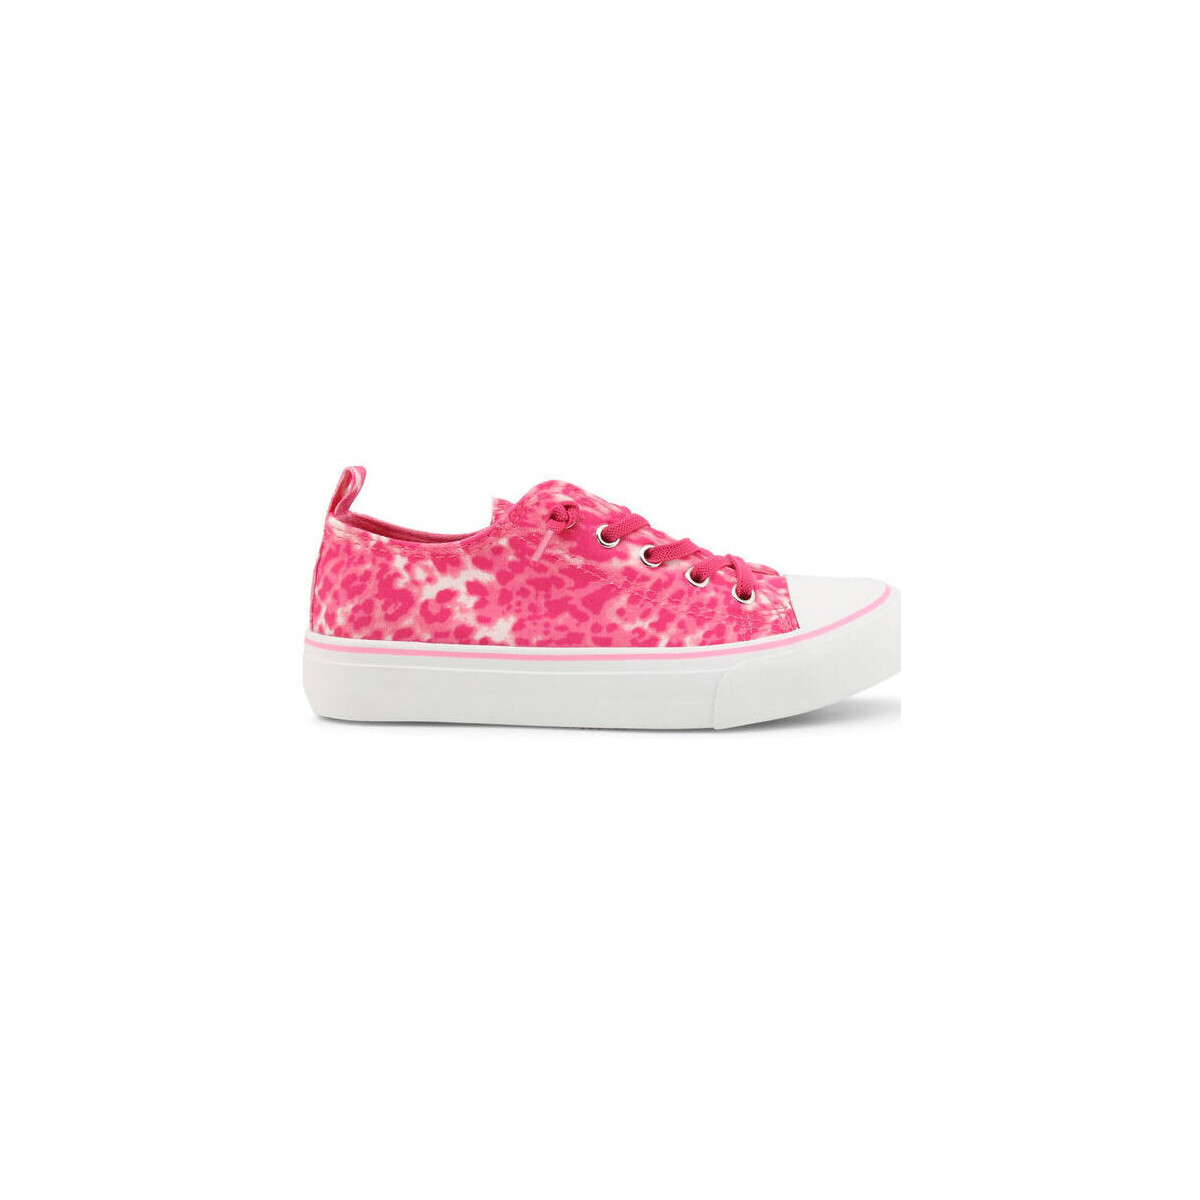 Sko Herre Sneakers Shone 292-003 Pink/Animalier Pink